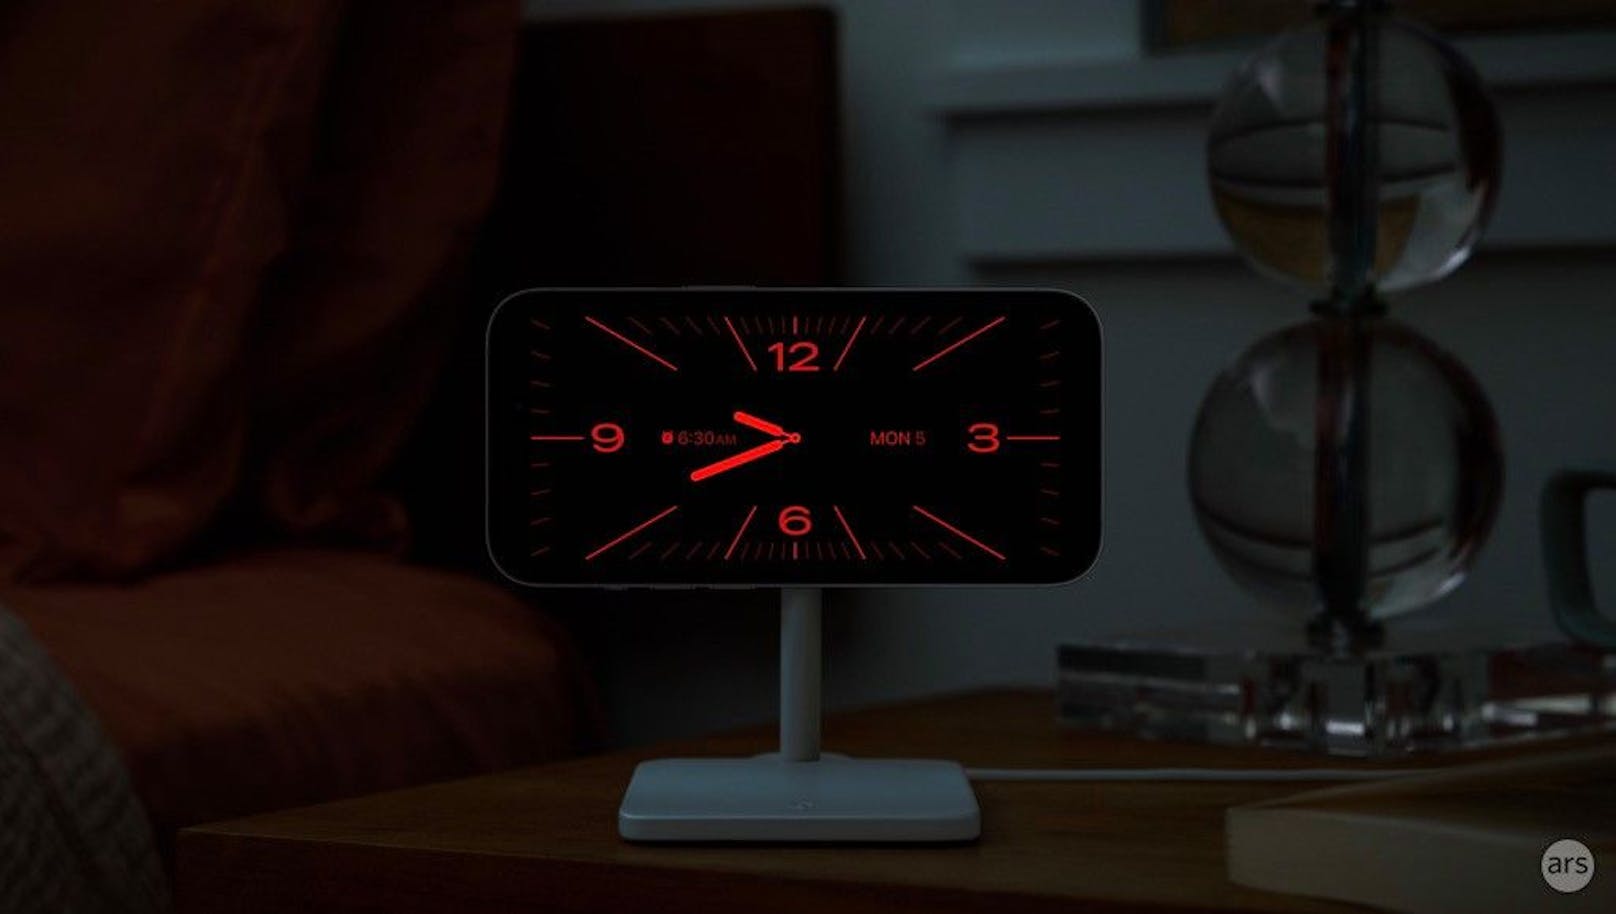 Das iPhone dient mit dem Always-on-Display auch als Nachttischuhr. Diese kann im Querformat angezeigt werden. In der Nacht wird das Display auf rot gestellt, um den Schlaf nicht zu stören.